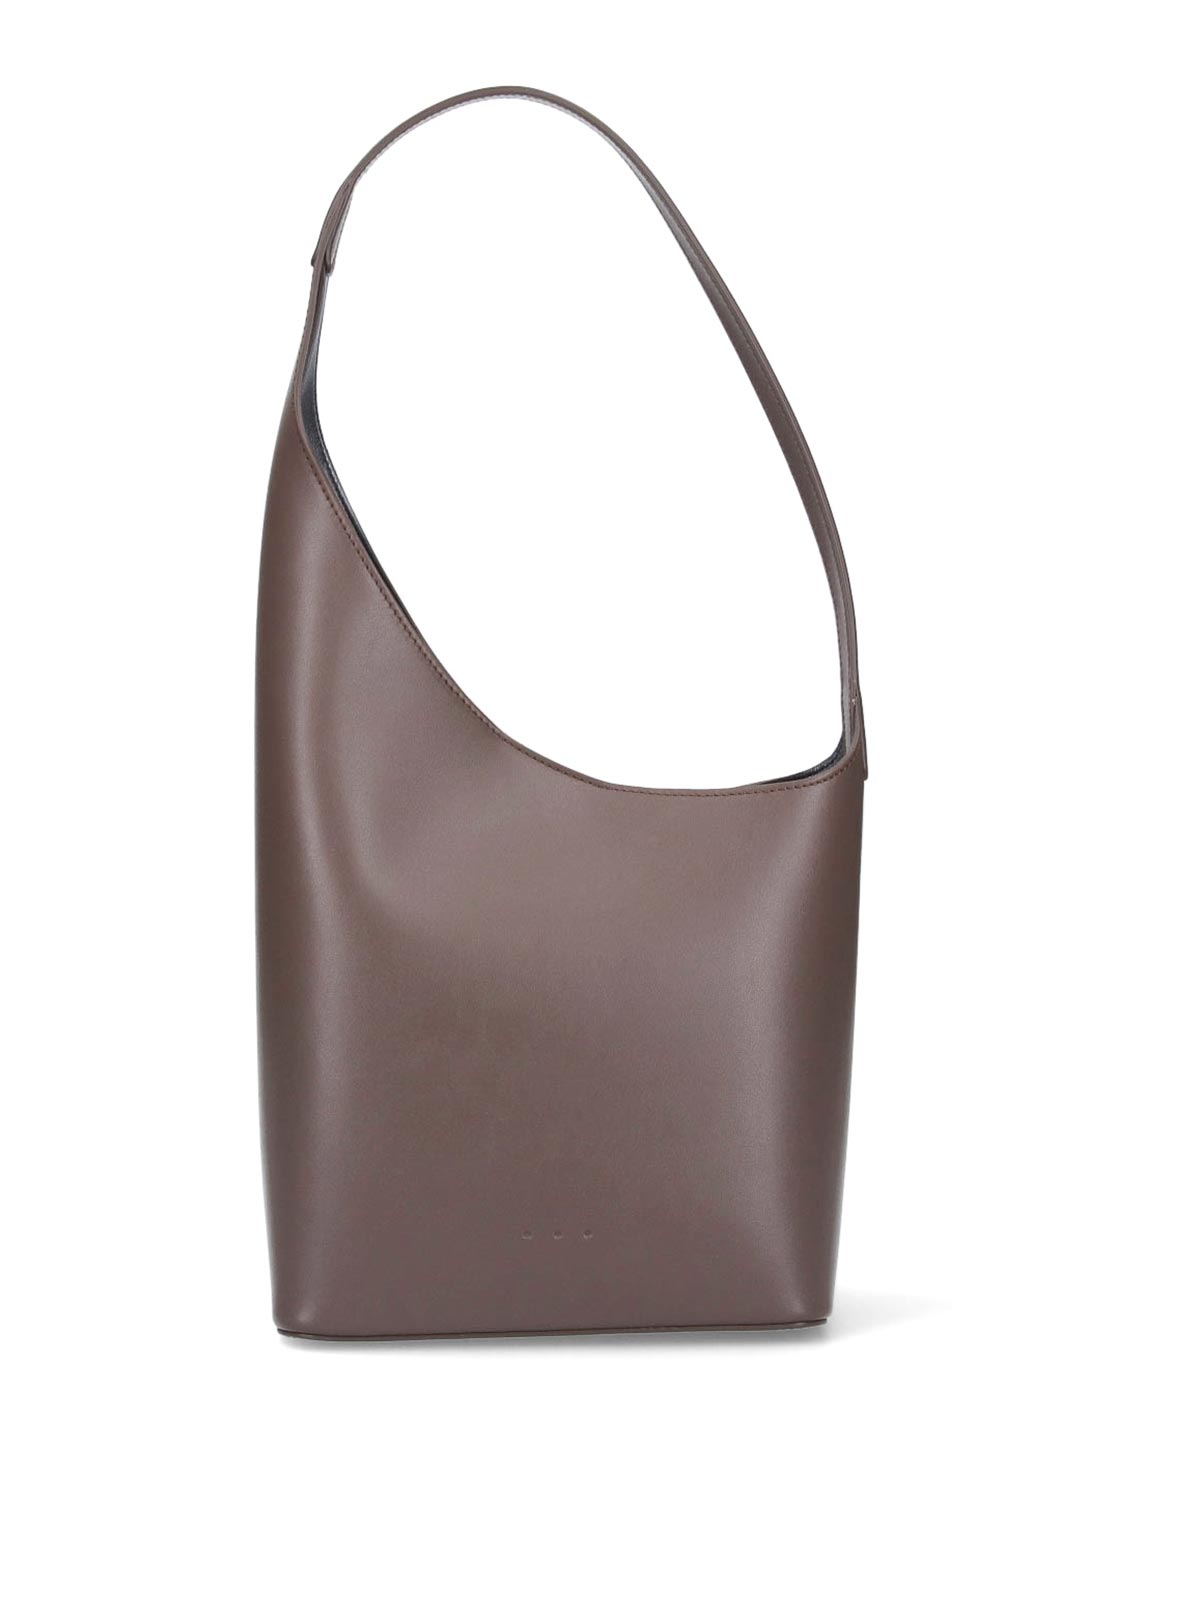 shoulder bag for woman - Beige  Aesther Ekme shoulder bag MINI